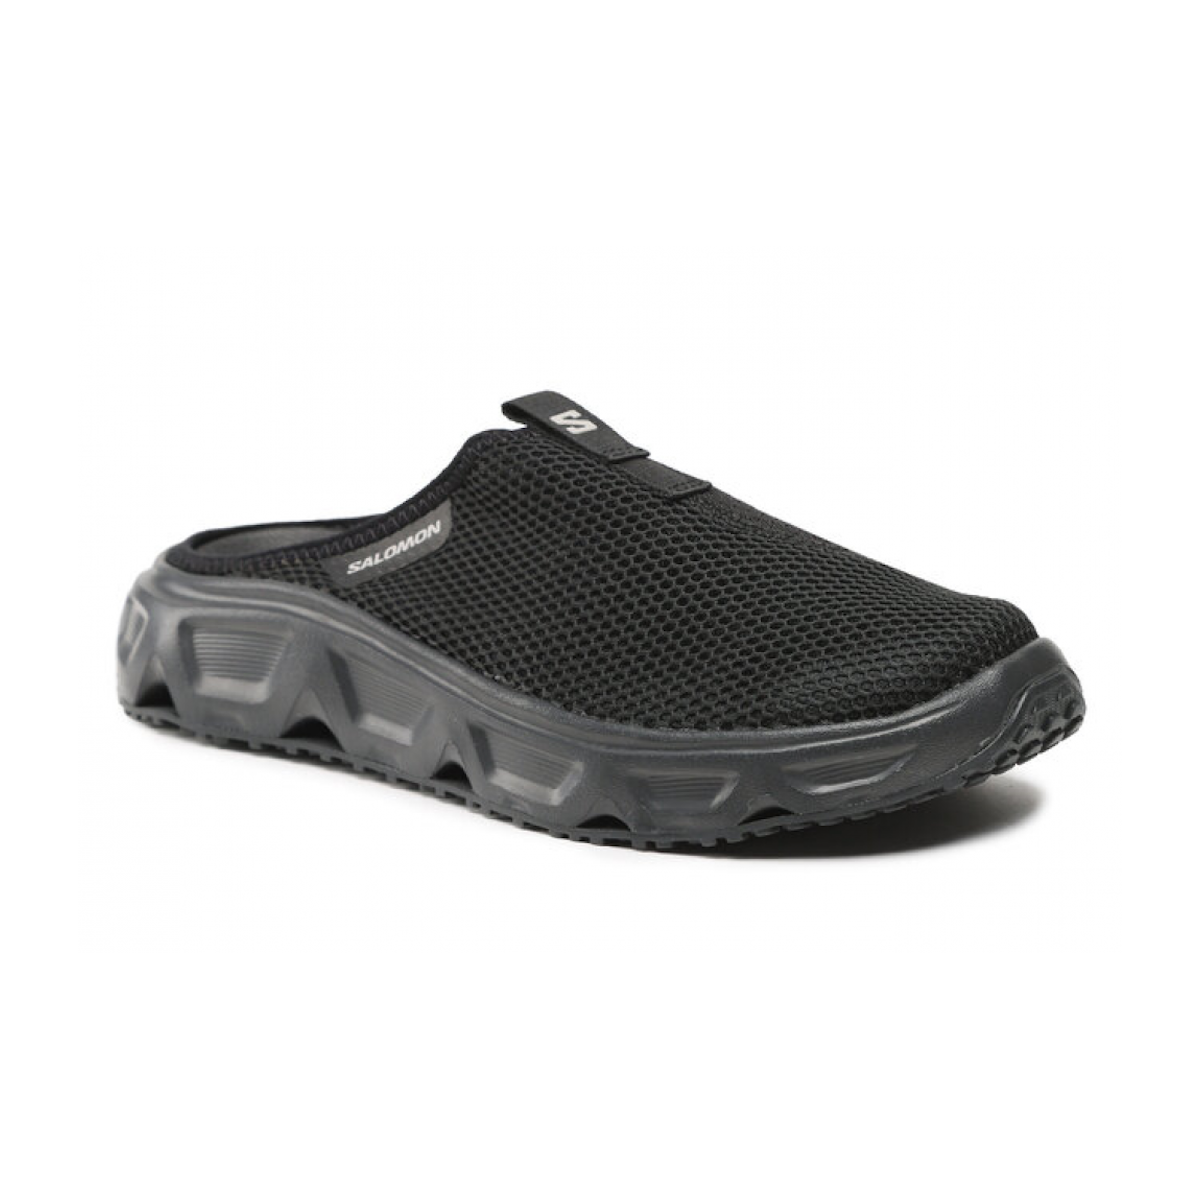 SALOMON WOMEN'S REELAX SLIDE 6.0 hiking sandals - black